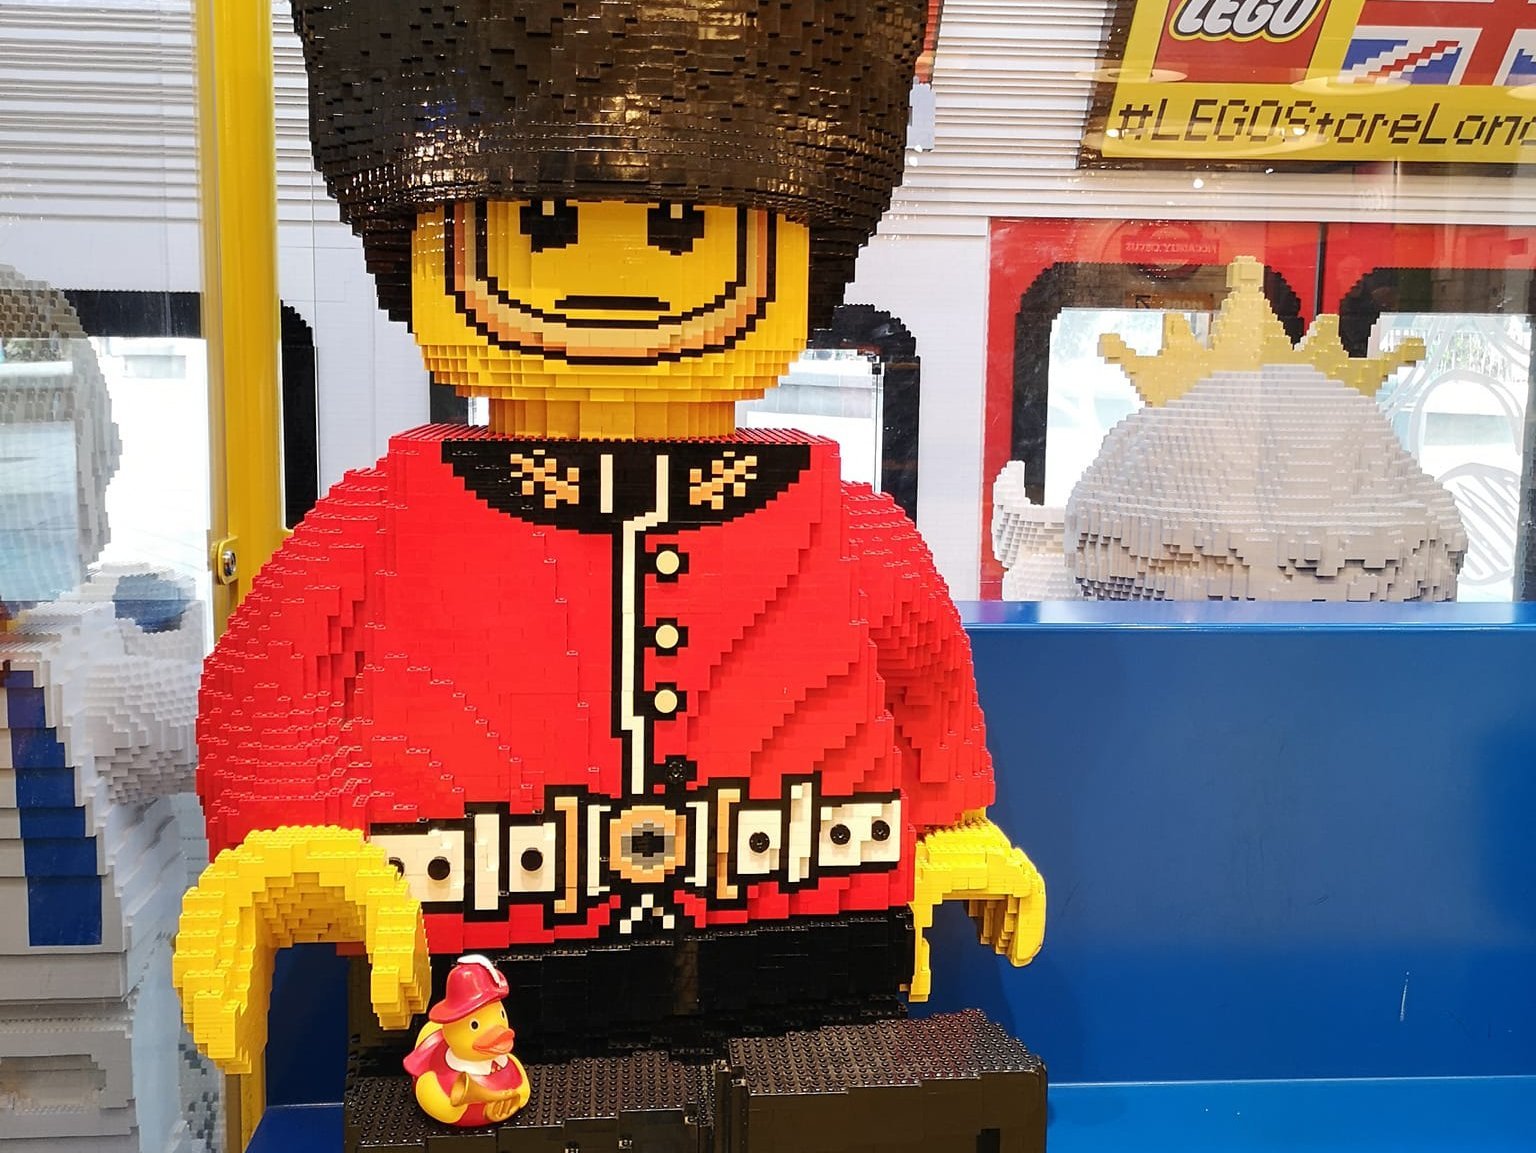  Werner im Lego Store London (Großbritannien) 